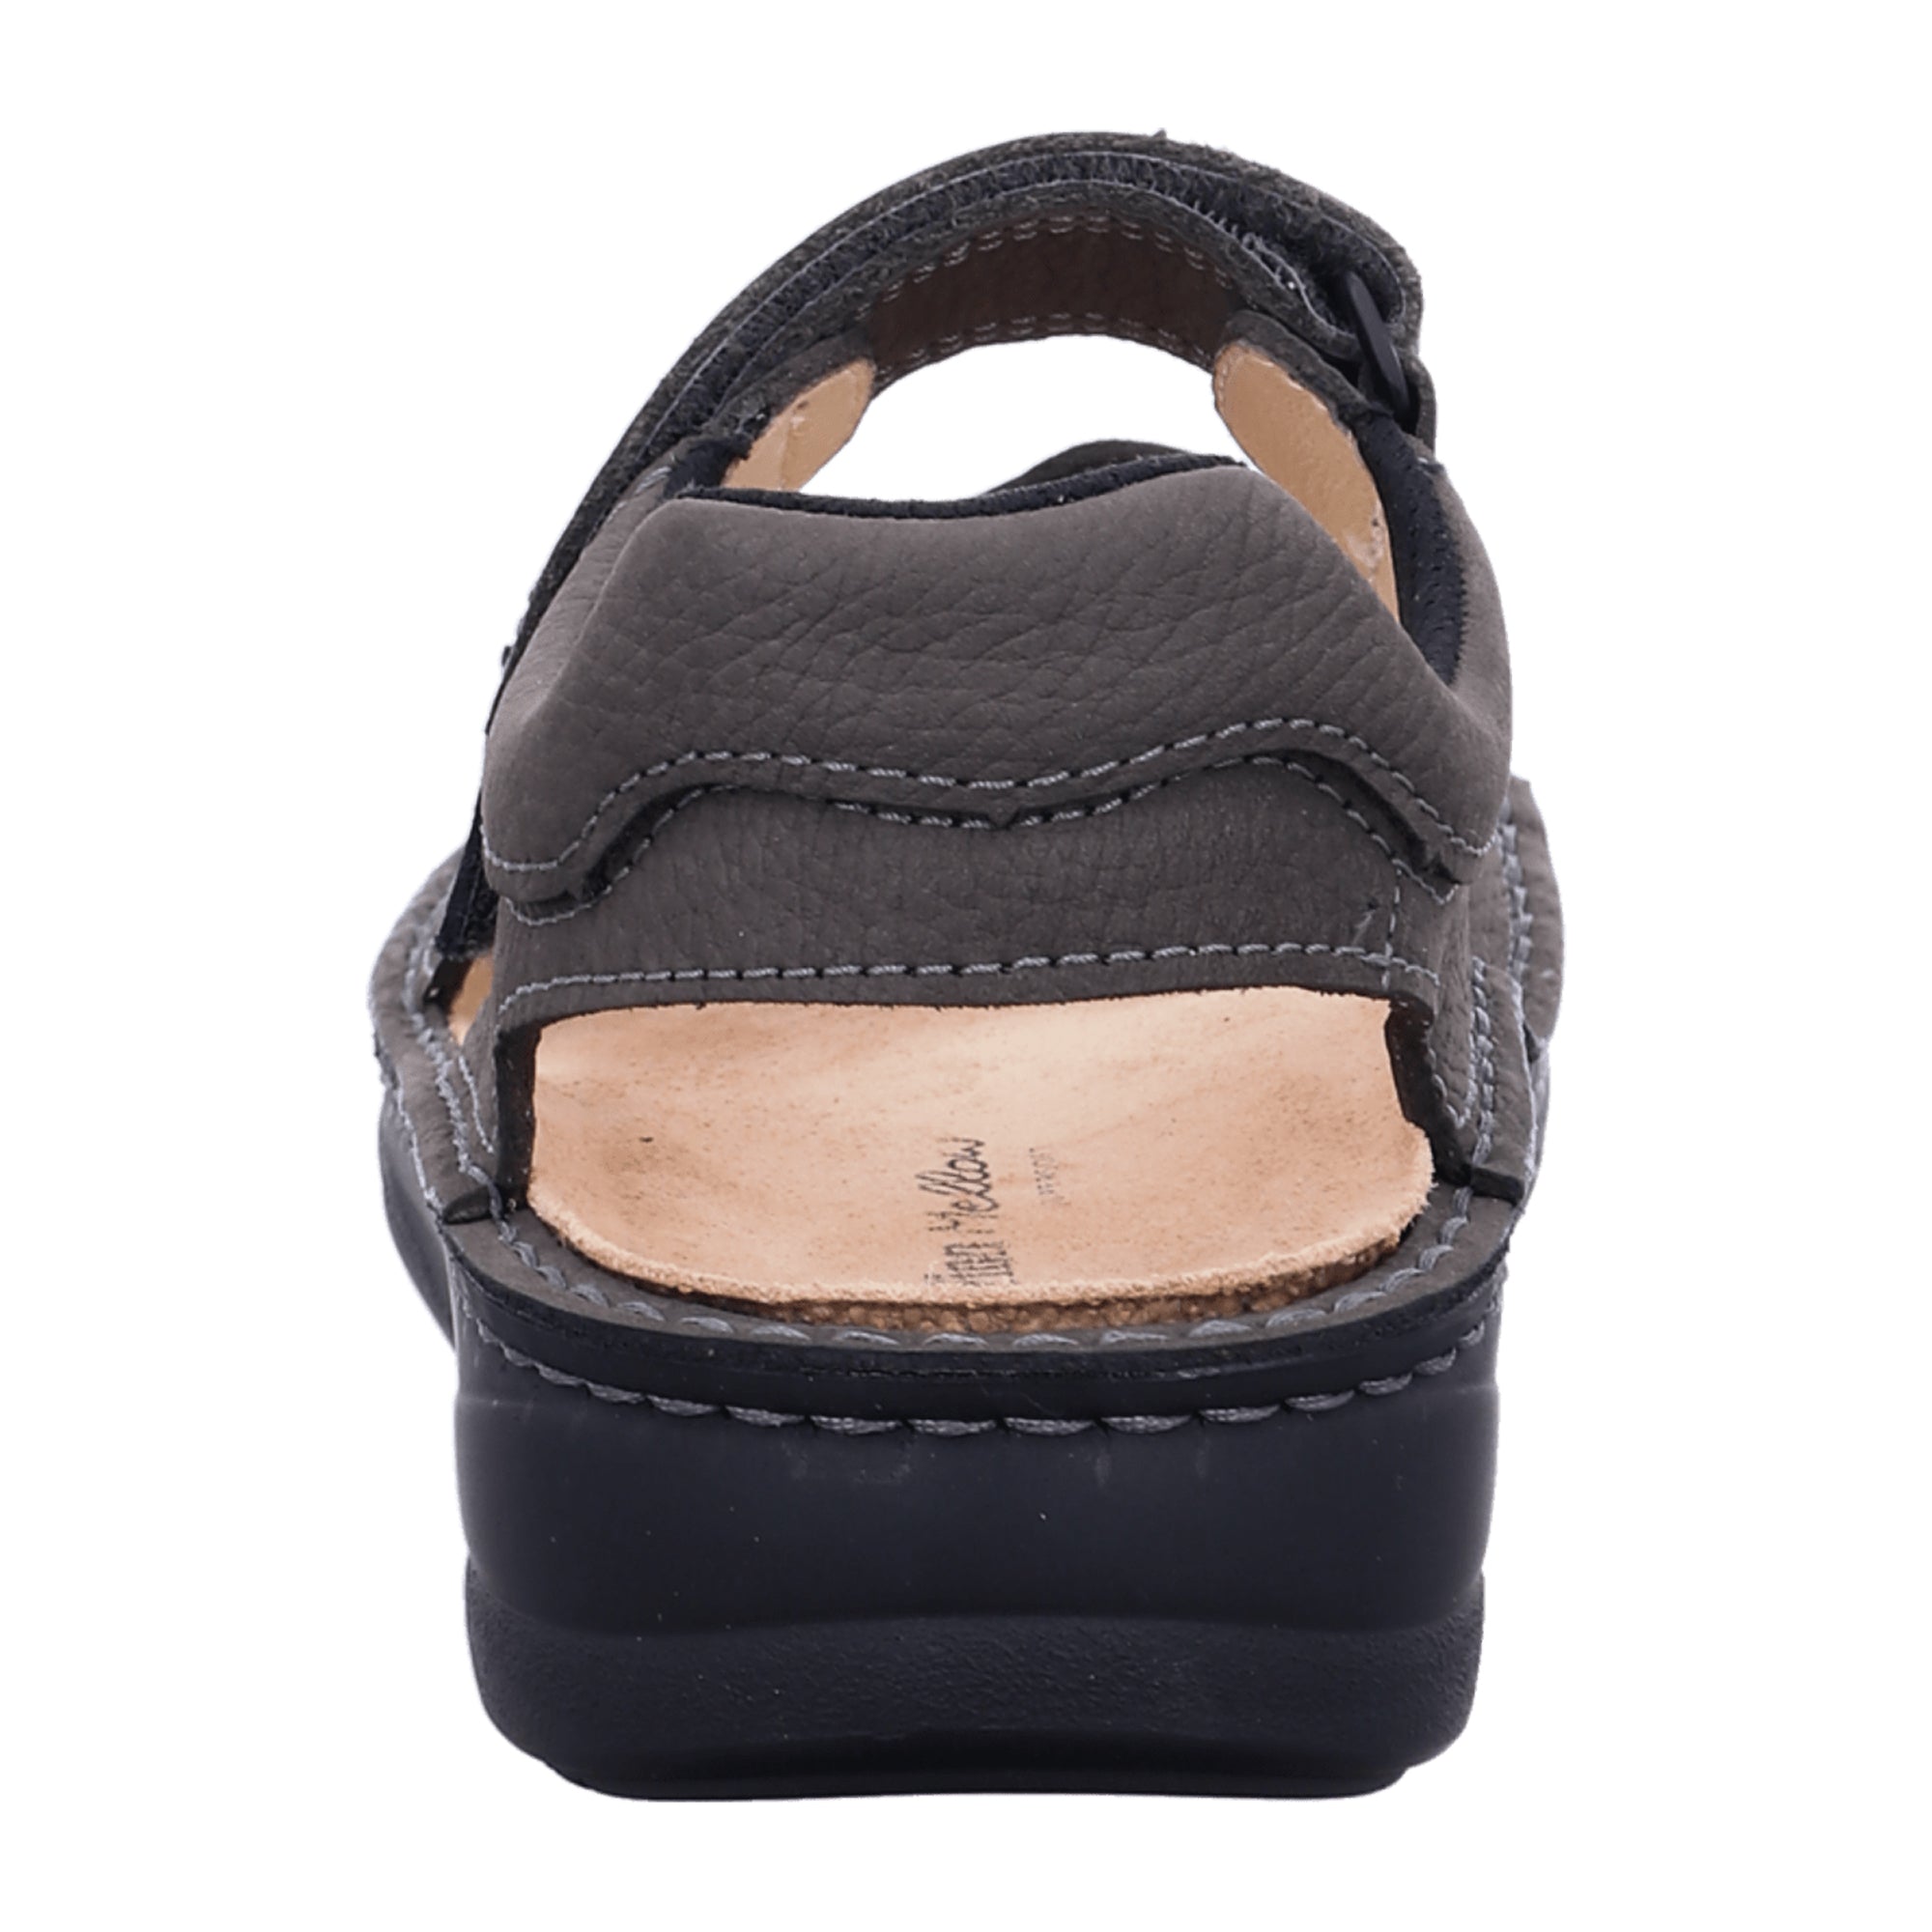 Finn Comfort Skiathos Men's Comfort Sandals - Grey/Black Leather with Adjustable Soft Footbed